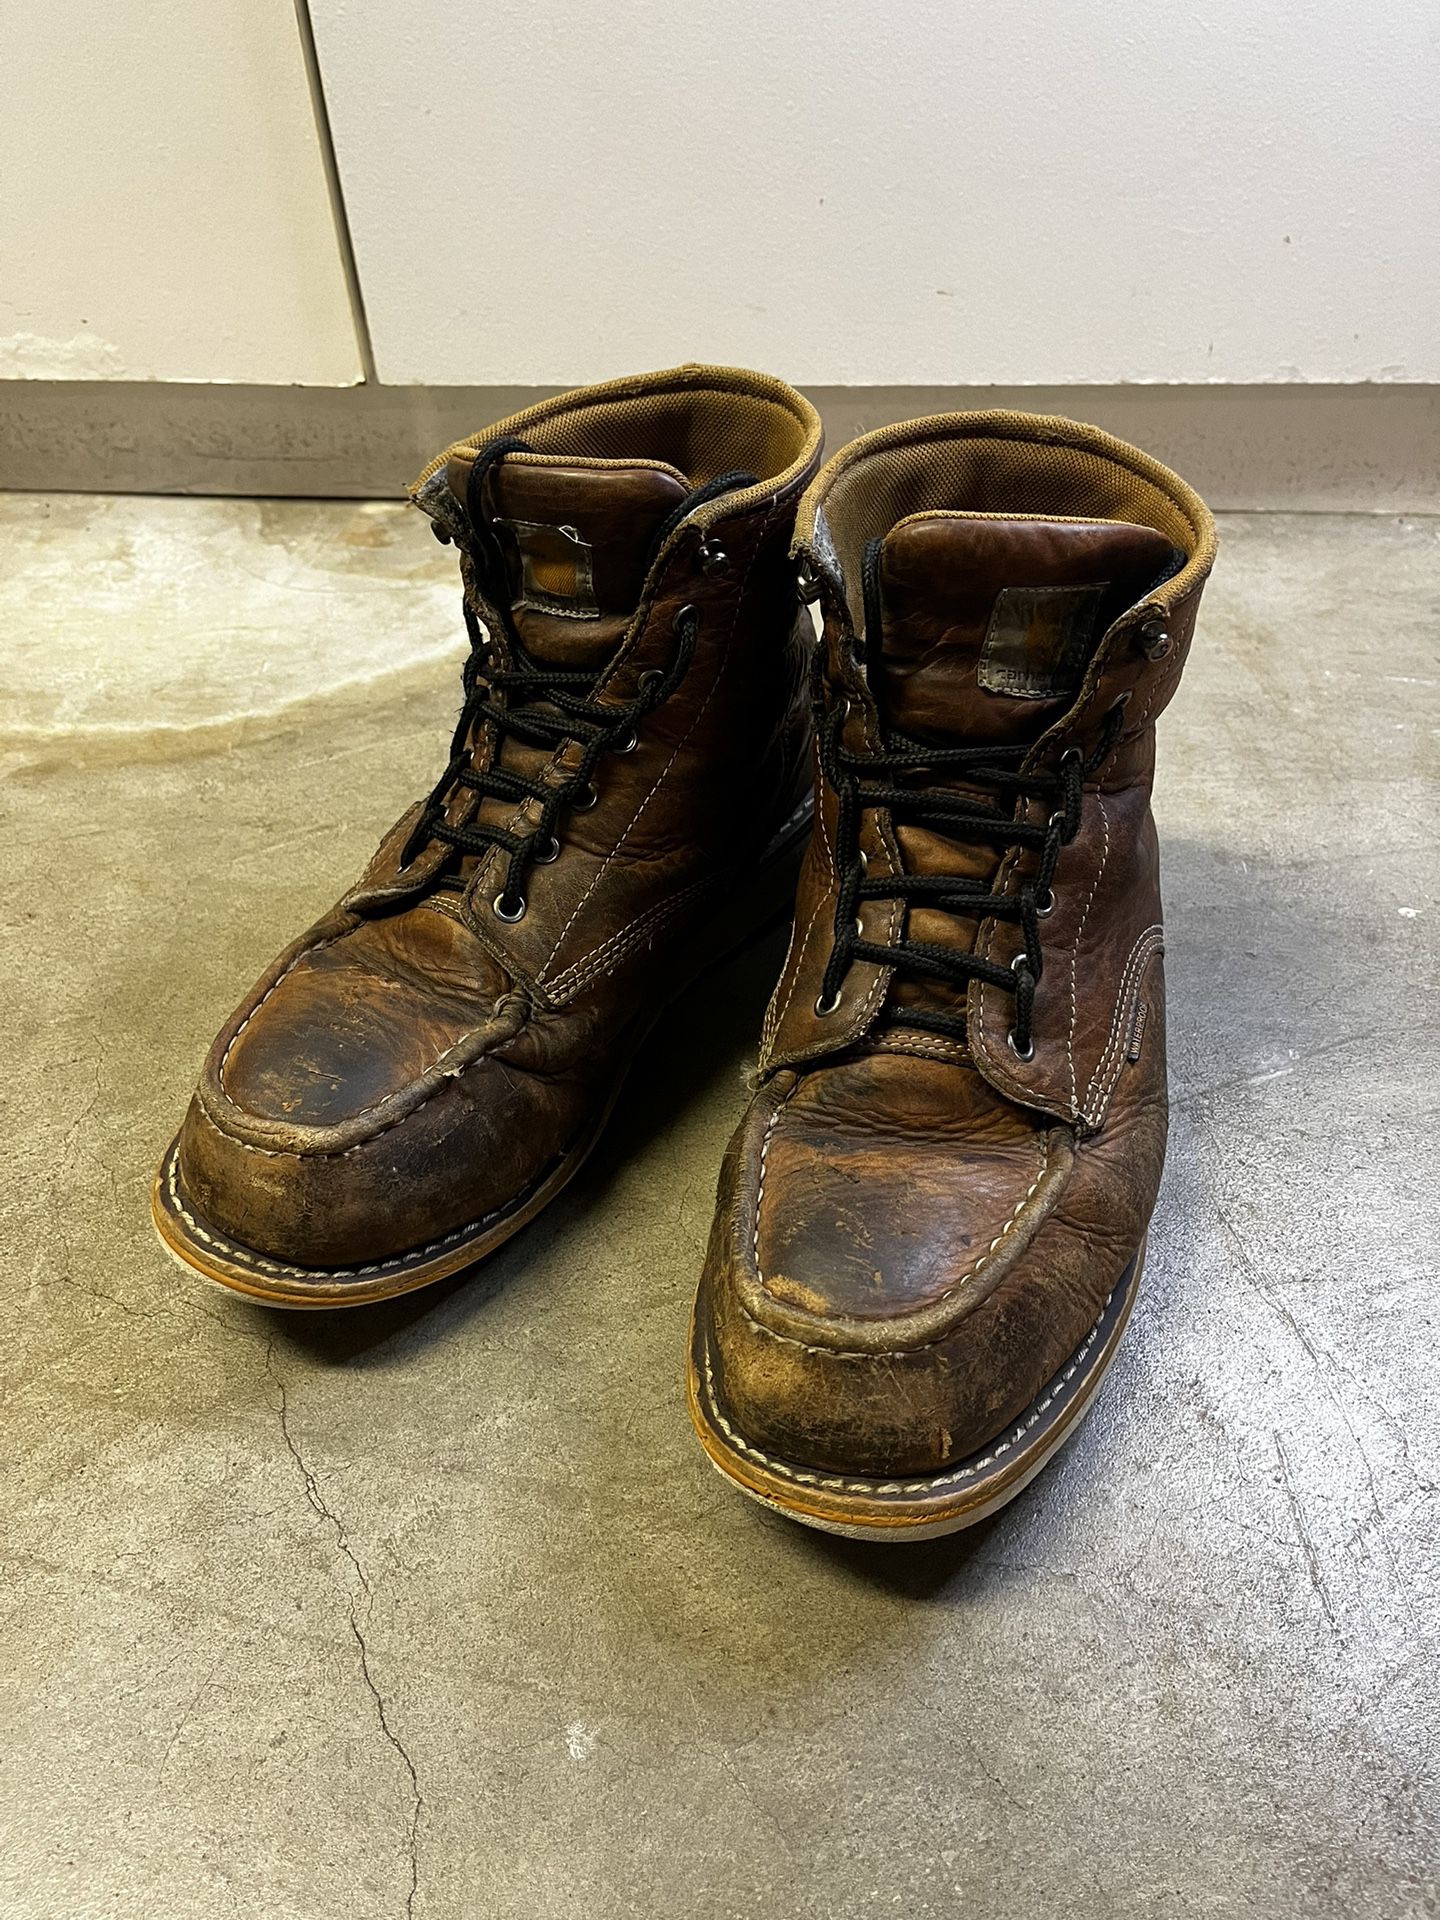 Carhartt waterproof steel toe boots